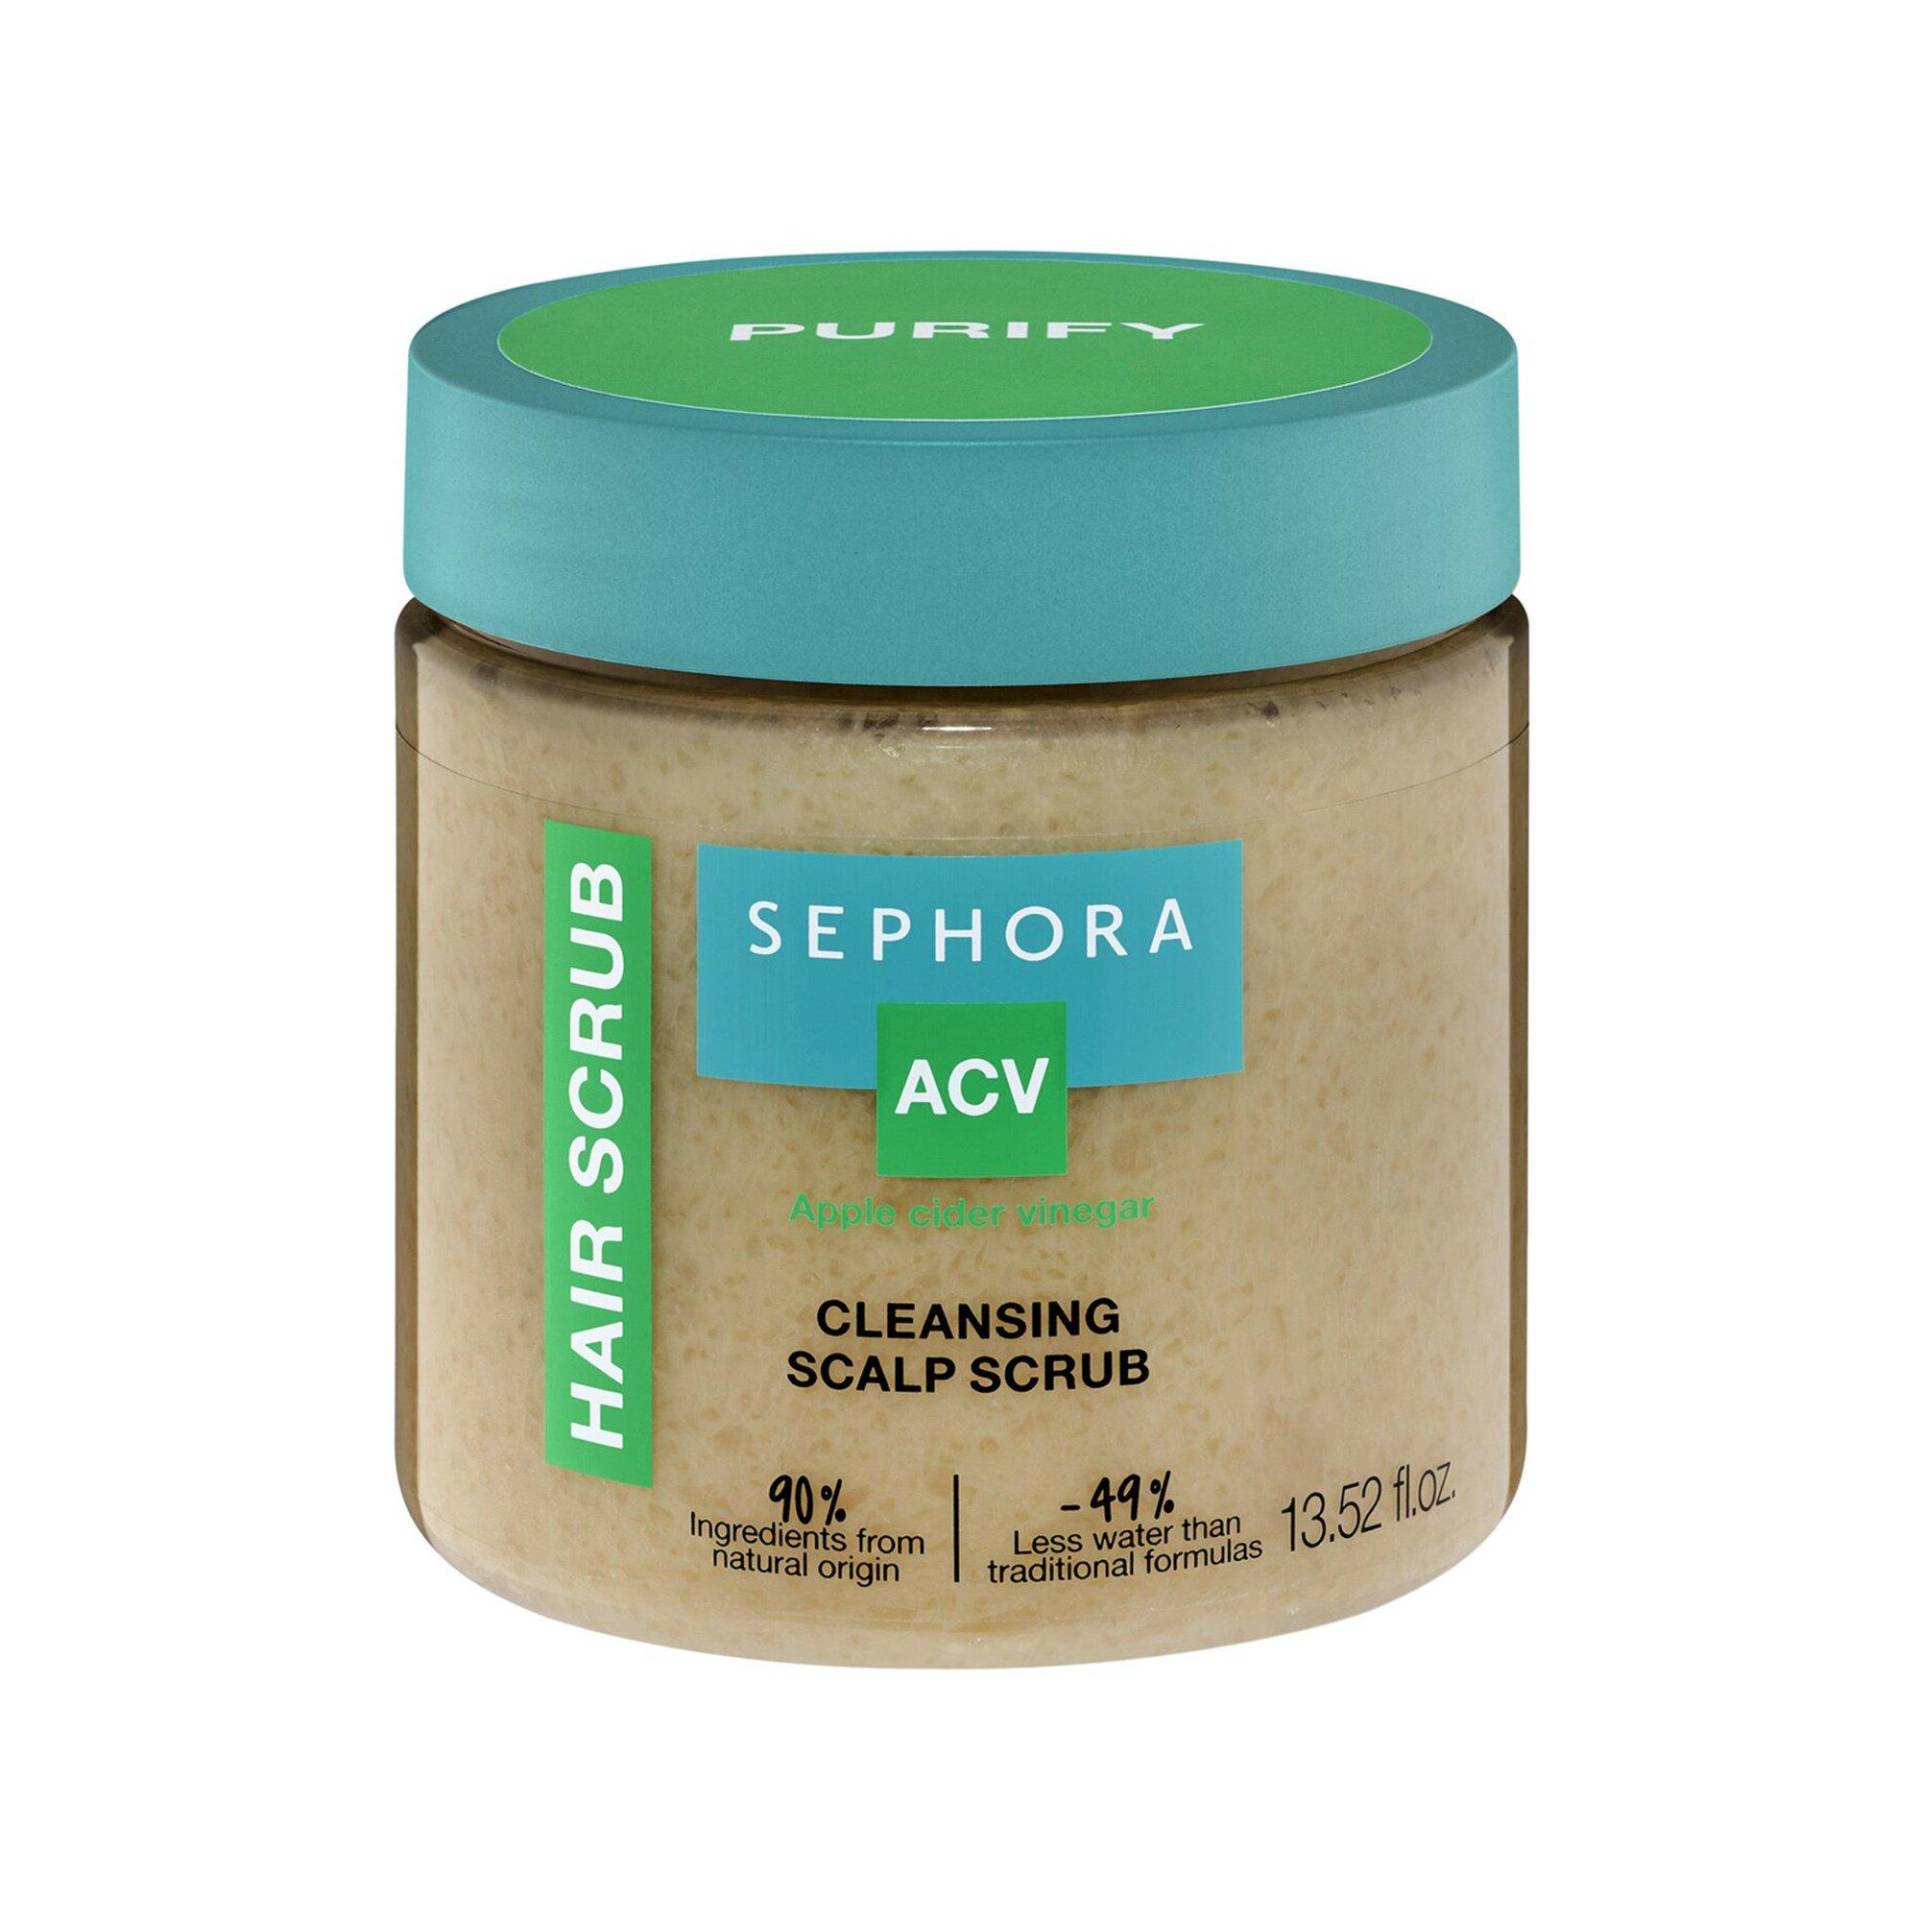 Shampooing Exfoliant Cheveux - Reinigendes Shampoo Damen  400ml von SEPHORA